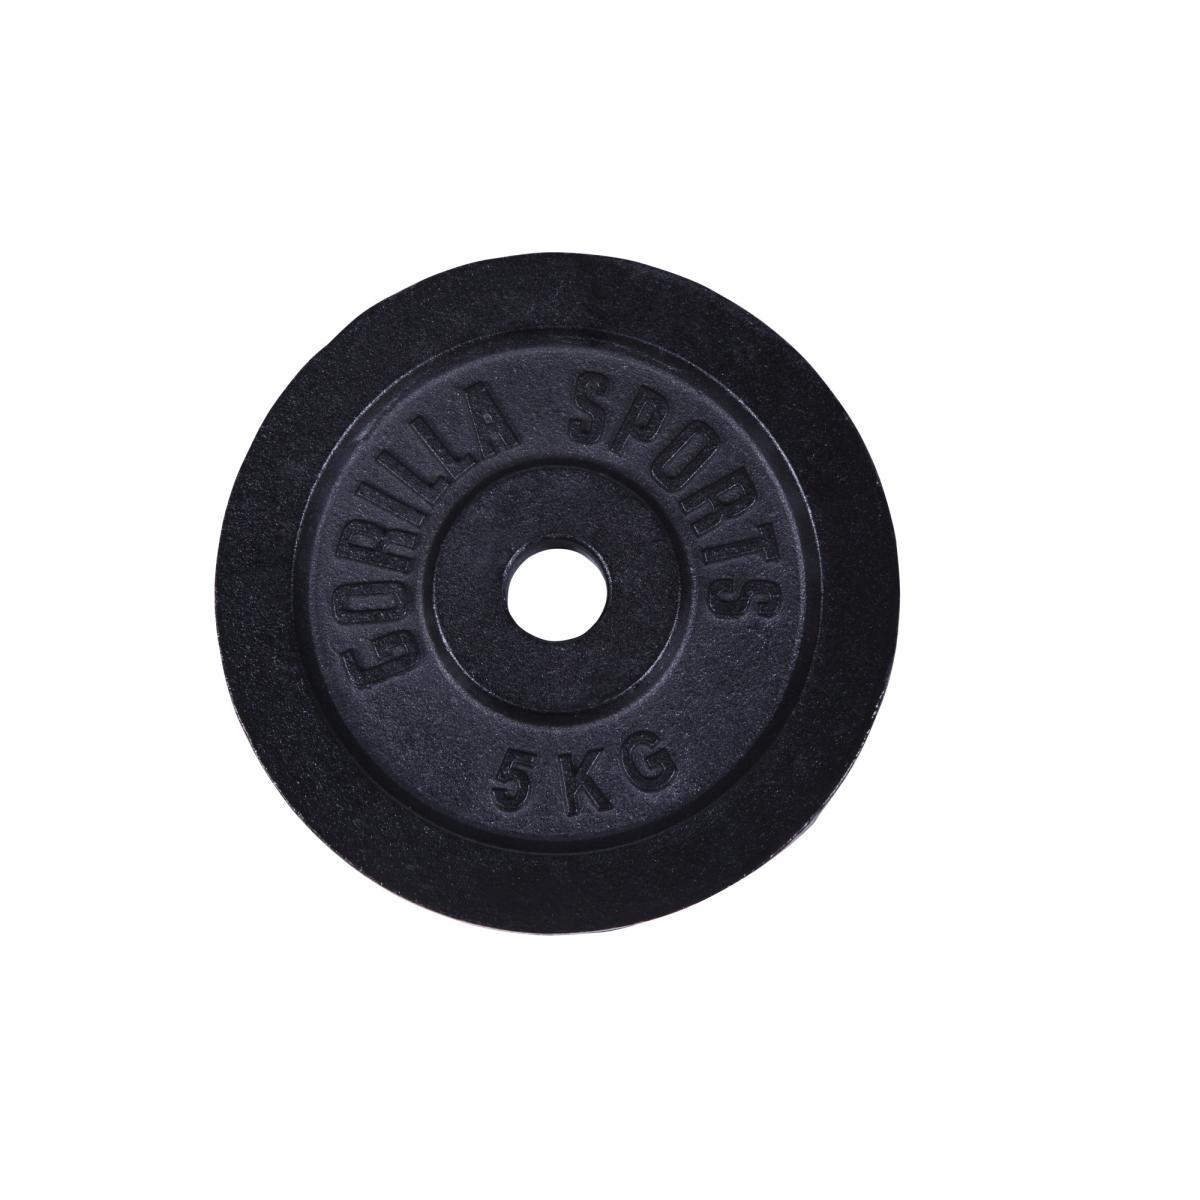 1 x disque de poids en fonte noire de 5kg - Ã 31mm d'alÃ©sage